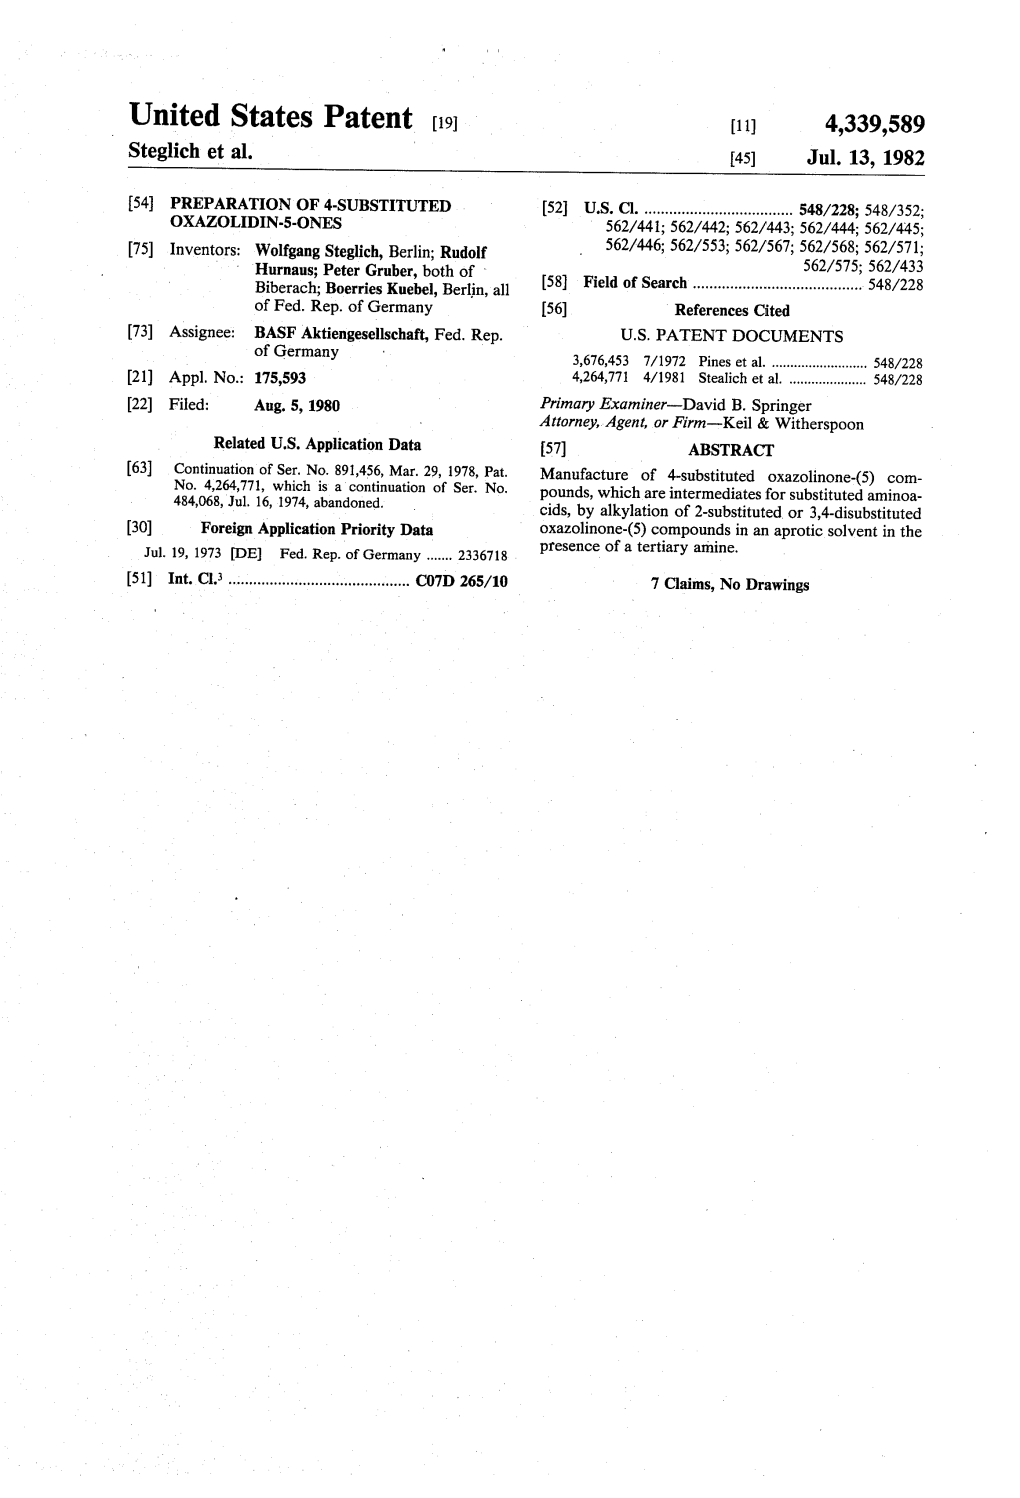 United States Patent (19) 11) 4,339,589 Steglich Et Al